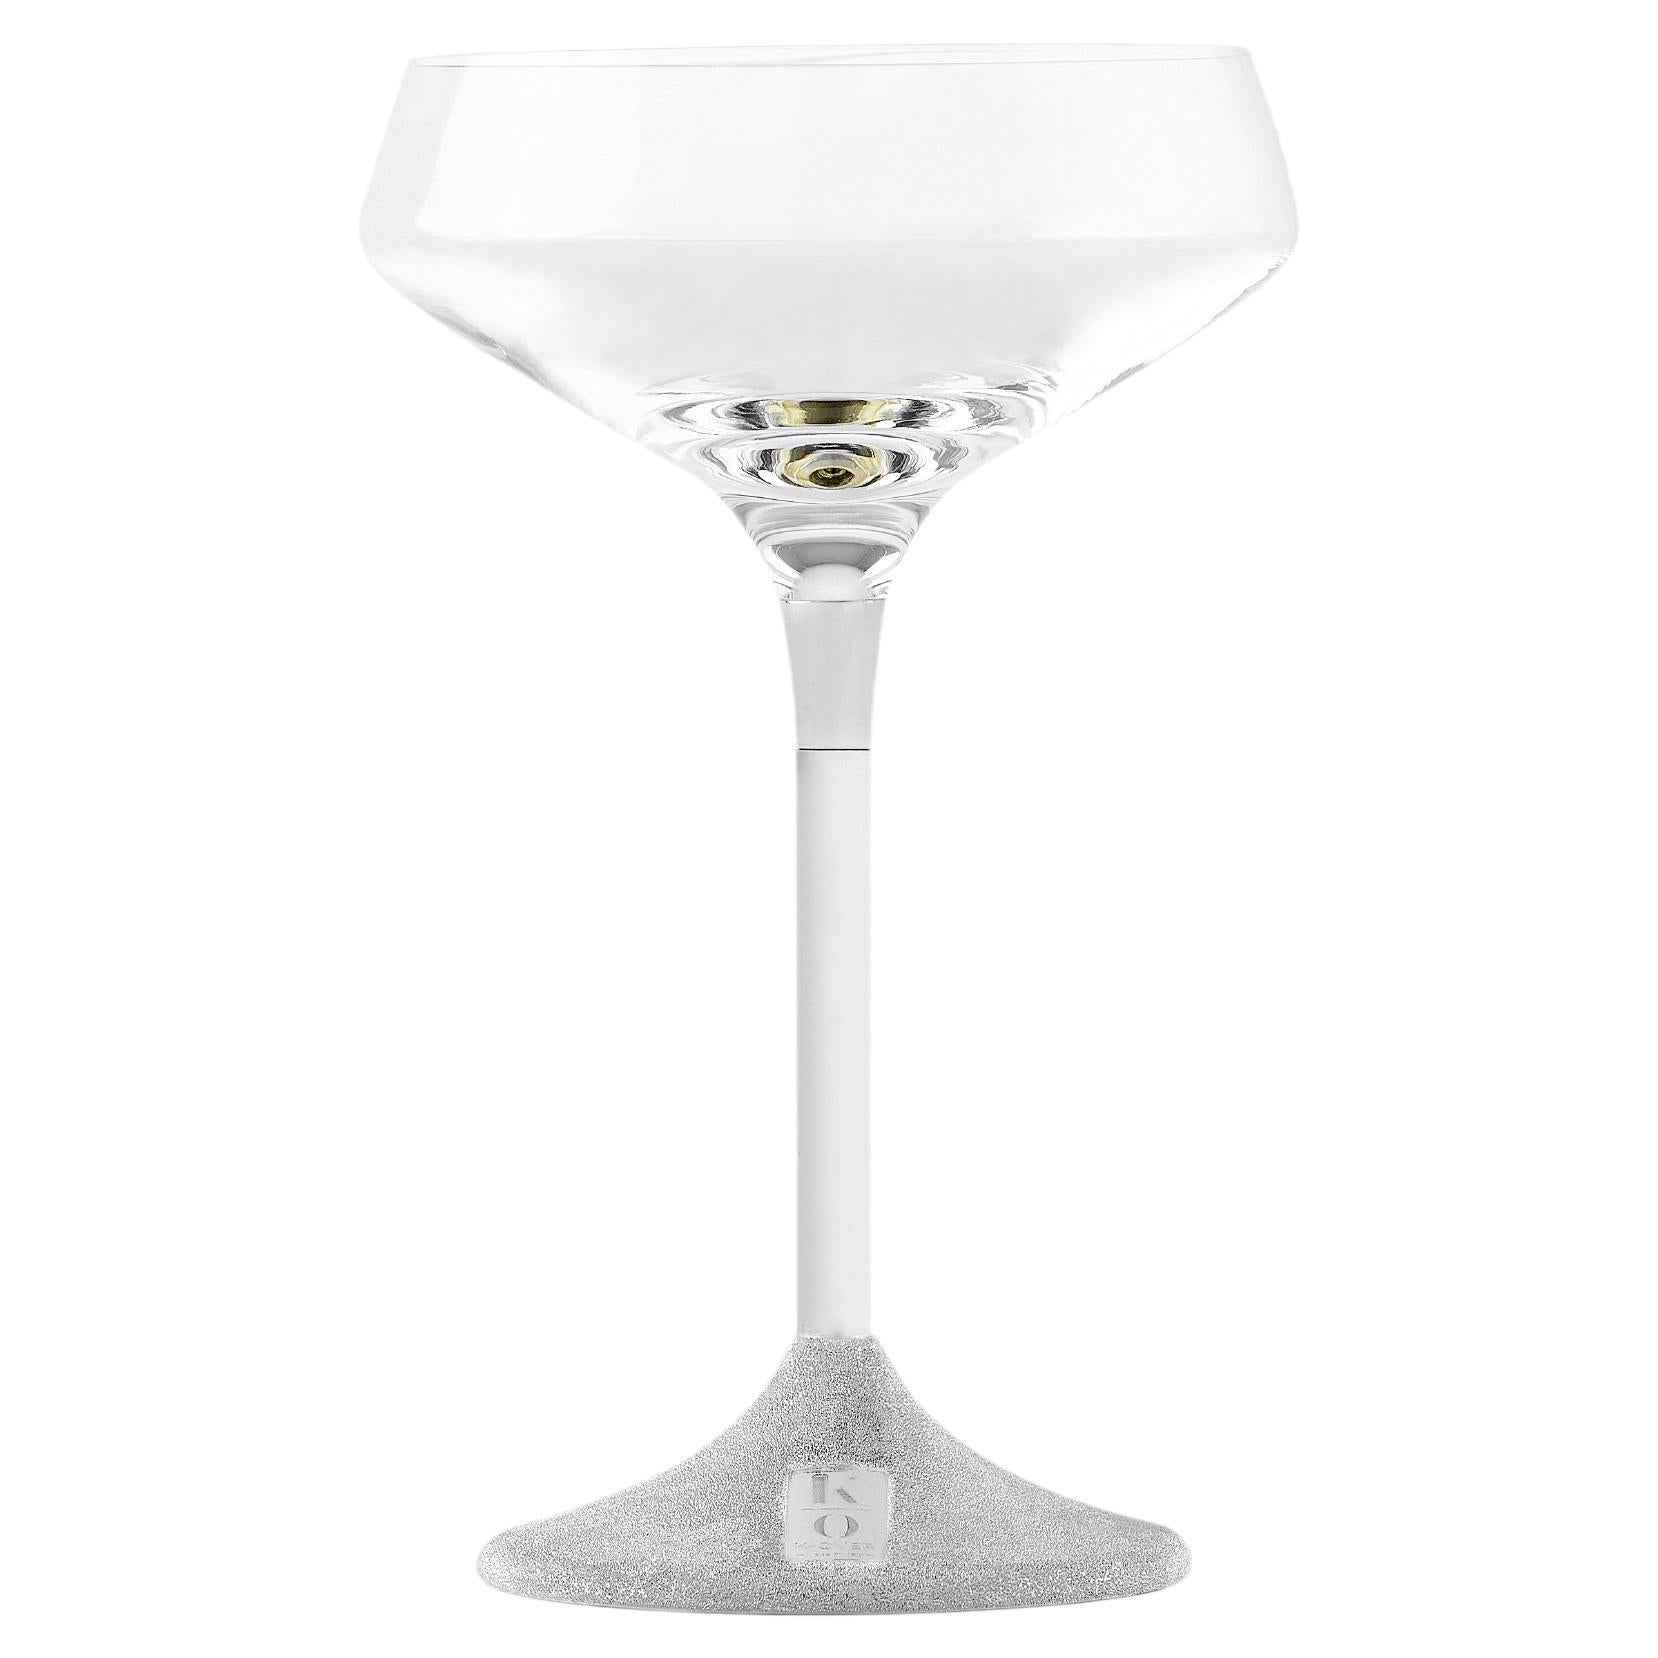 K-Over coppa champagne
I bicchieri con stelo in argento sono la nostra ultima creazione. Una combinazione perfetta di eleganza e praticità che contribuirà ad arricchire la vostra tavola quotidiana ma anche quella delle occasioni speciali. Il set che